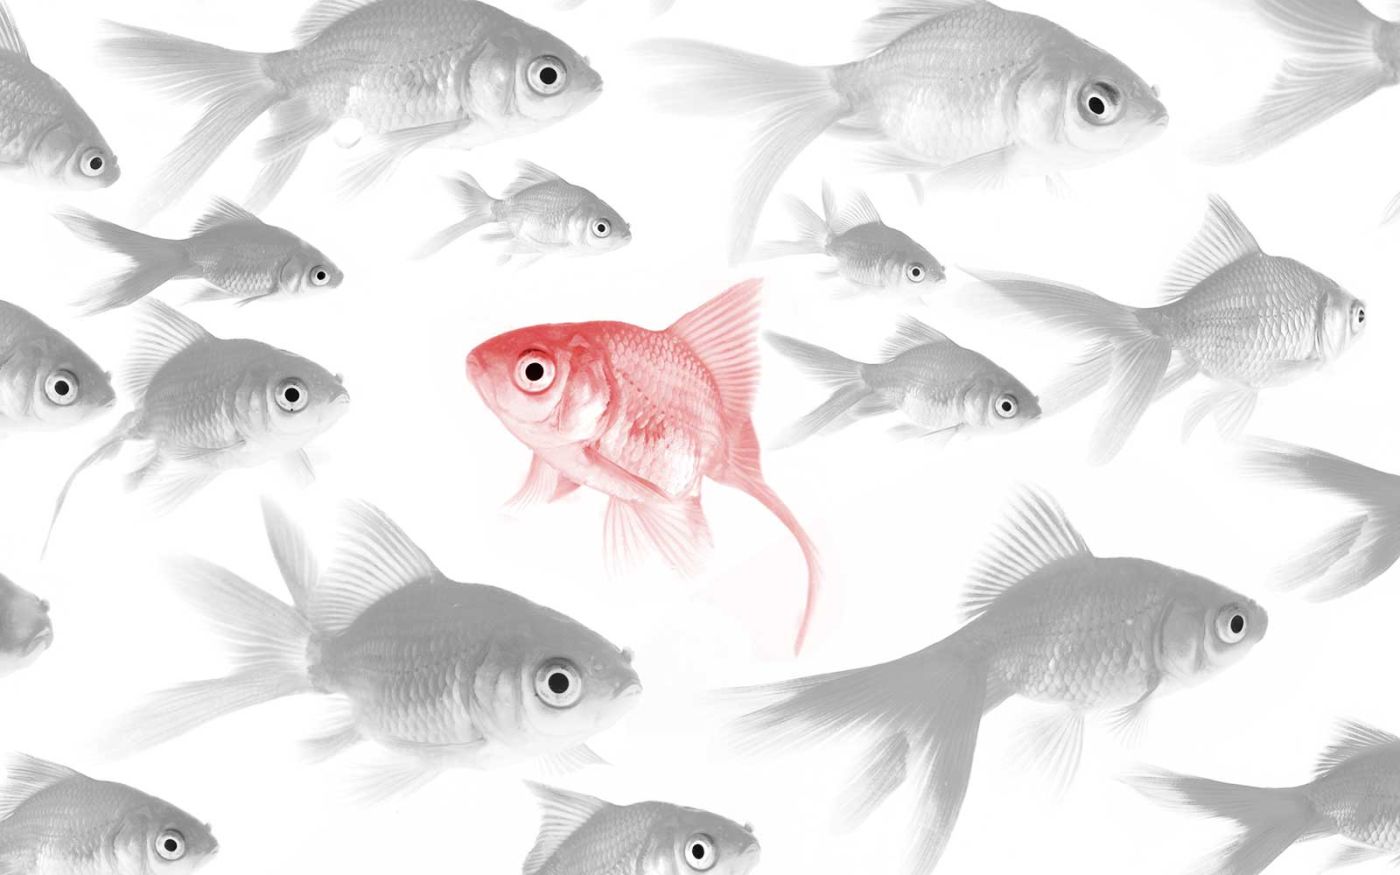 Viele Fische im Aquarium schwimmen in die selbe Richtung. Nur ein Fisch, der farbig, auffallend und eigenständig ist, schwimmt in die andere Richtung. Ein Bild dafür, dass man mit der richtigen Werbung sich in der Masse von Mitwettbewerbern abhebt.